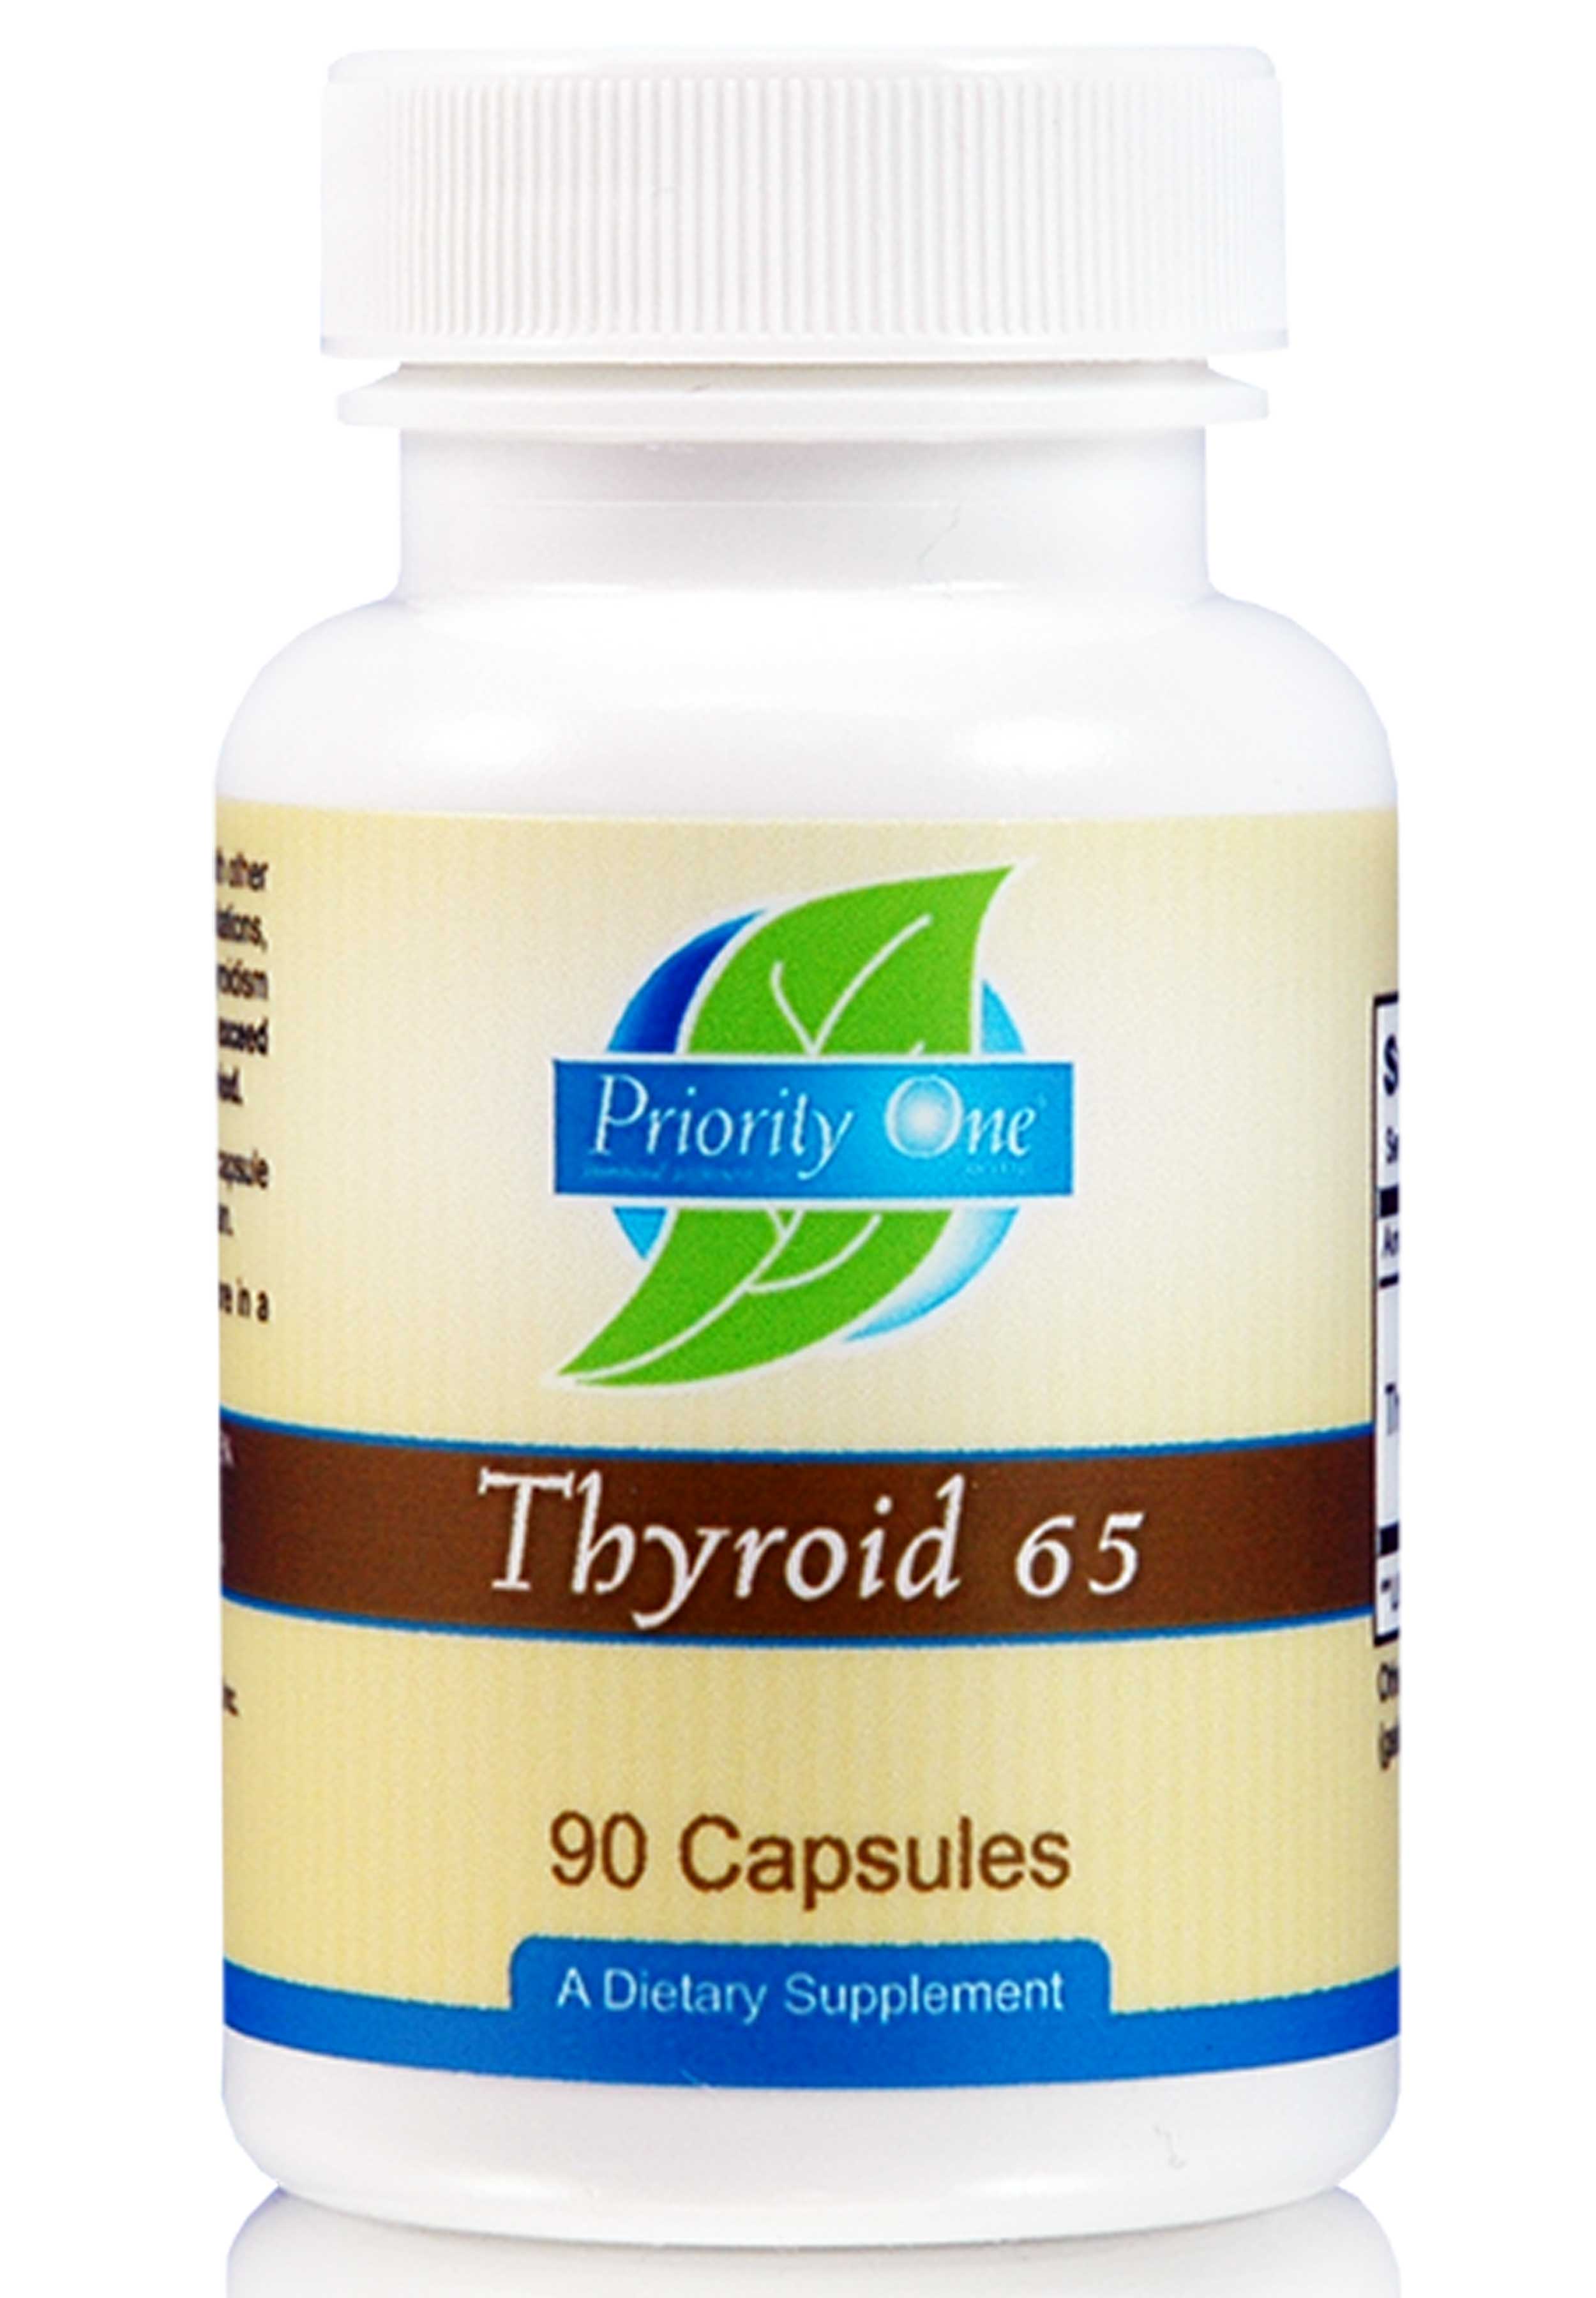 Priority One Thyroid